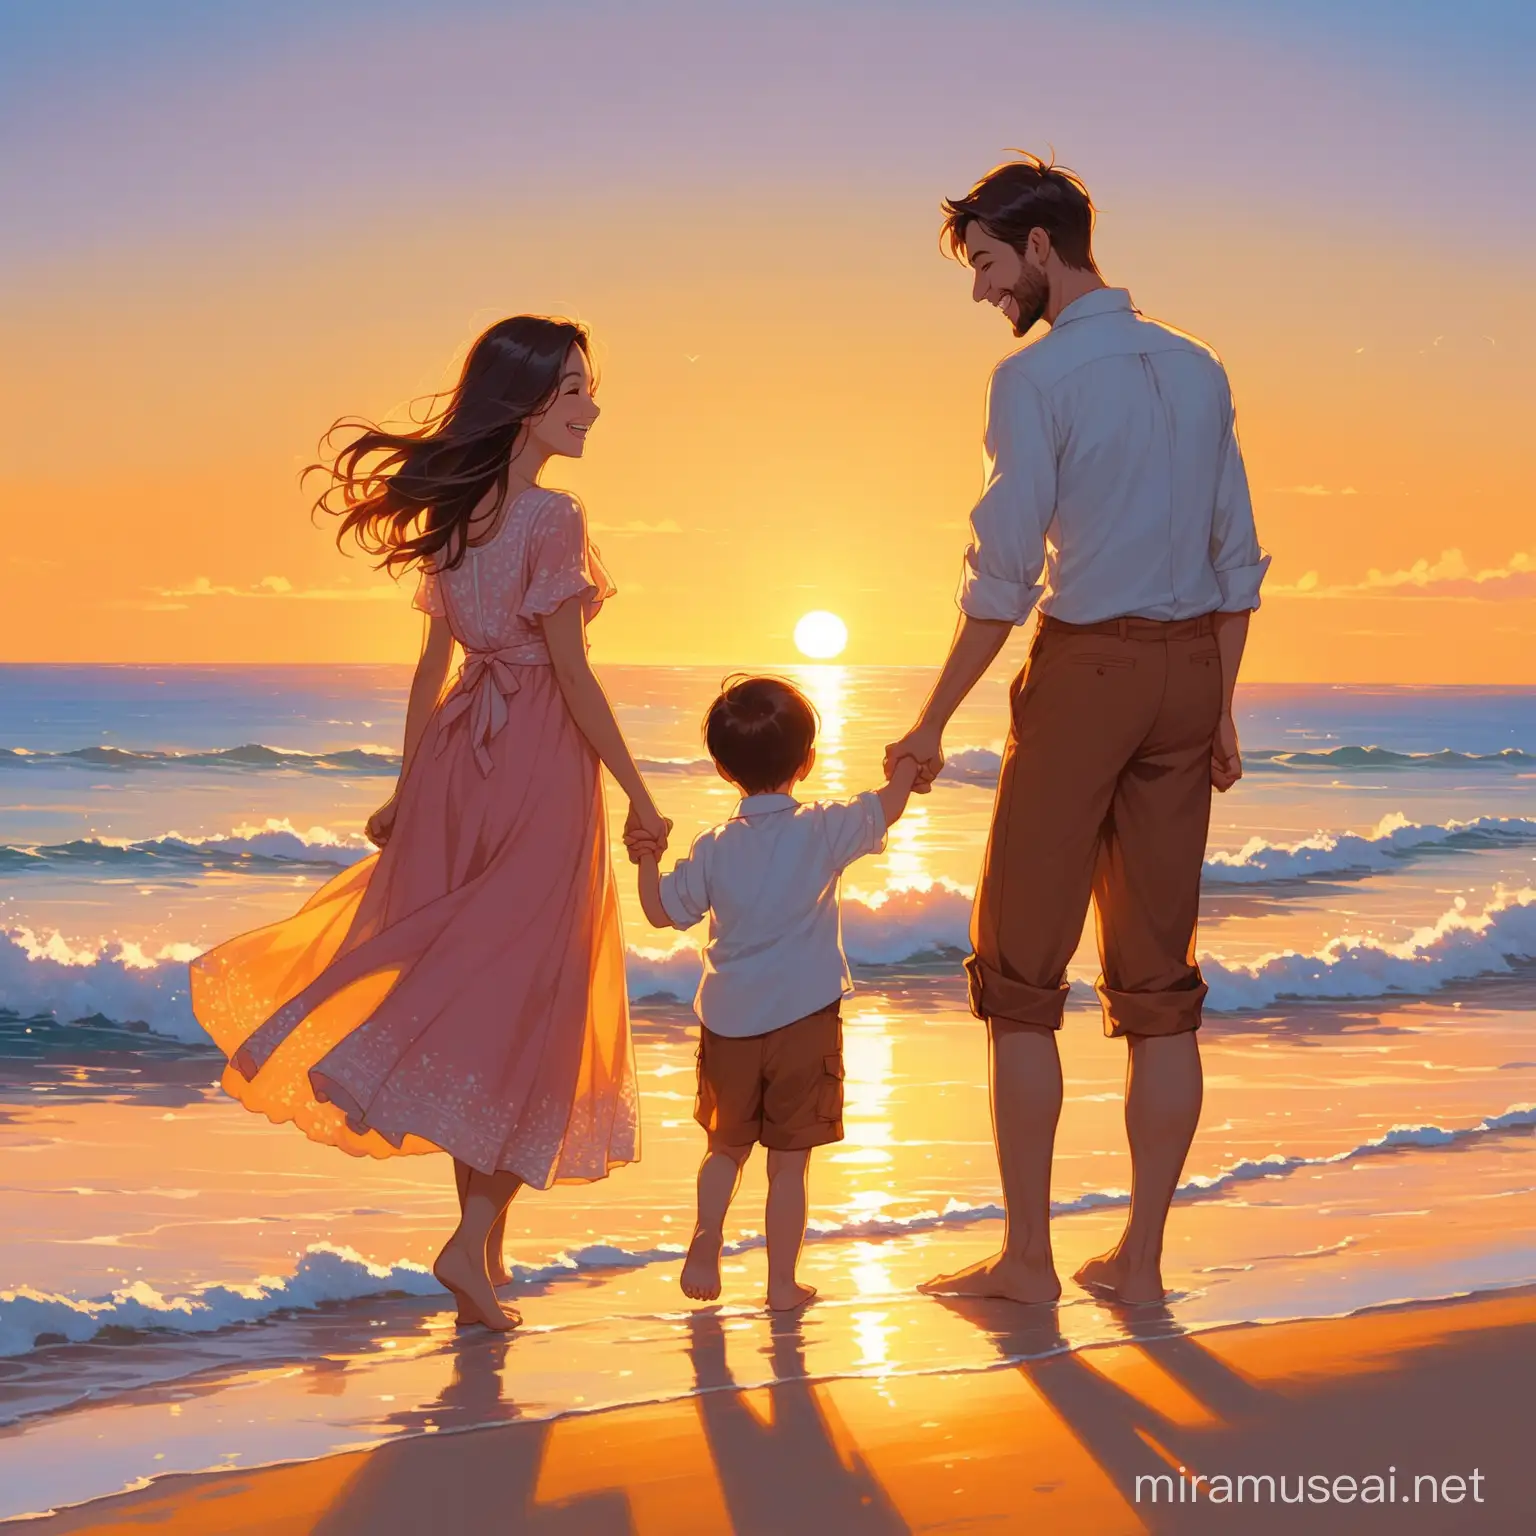 Муж и жена,а с ними дети : мальчик и девочка встречают рассвет на берегу океана.Все в красивых одеждах,радостные и счастливые.